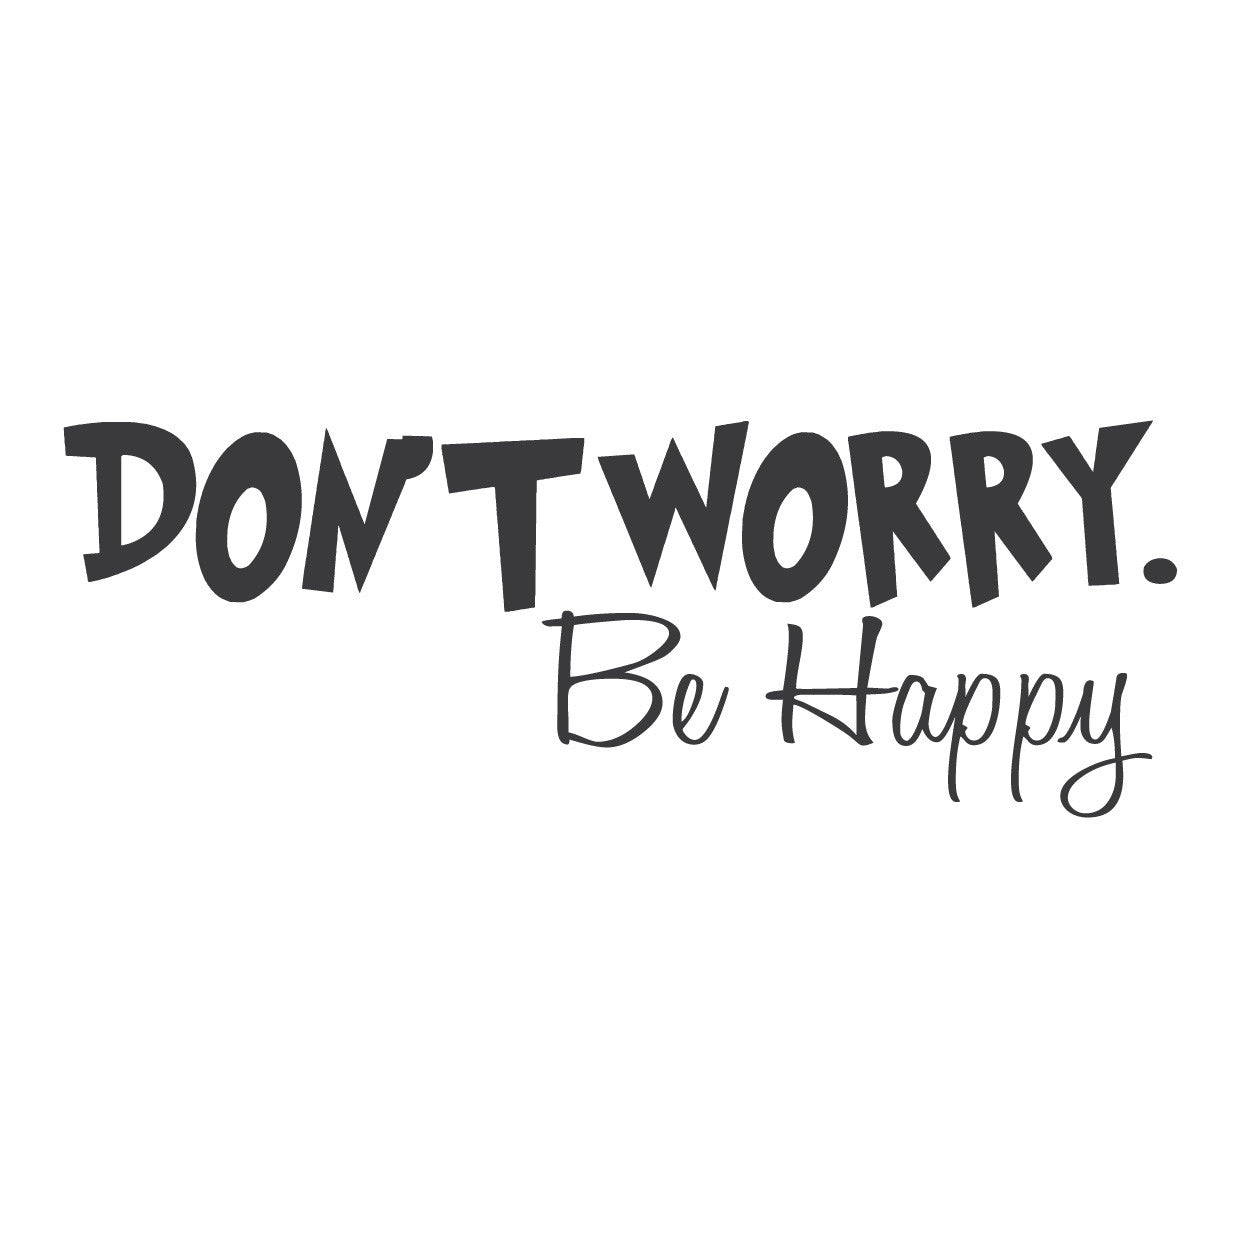 Bi happy. Надпись don't worry be Happy. Don't worry be Happy картинки. Донт вори би Хэппи. Надпись донт вори би Хэппи.